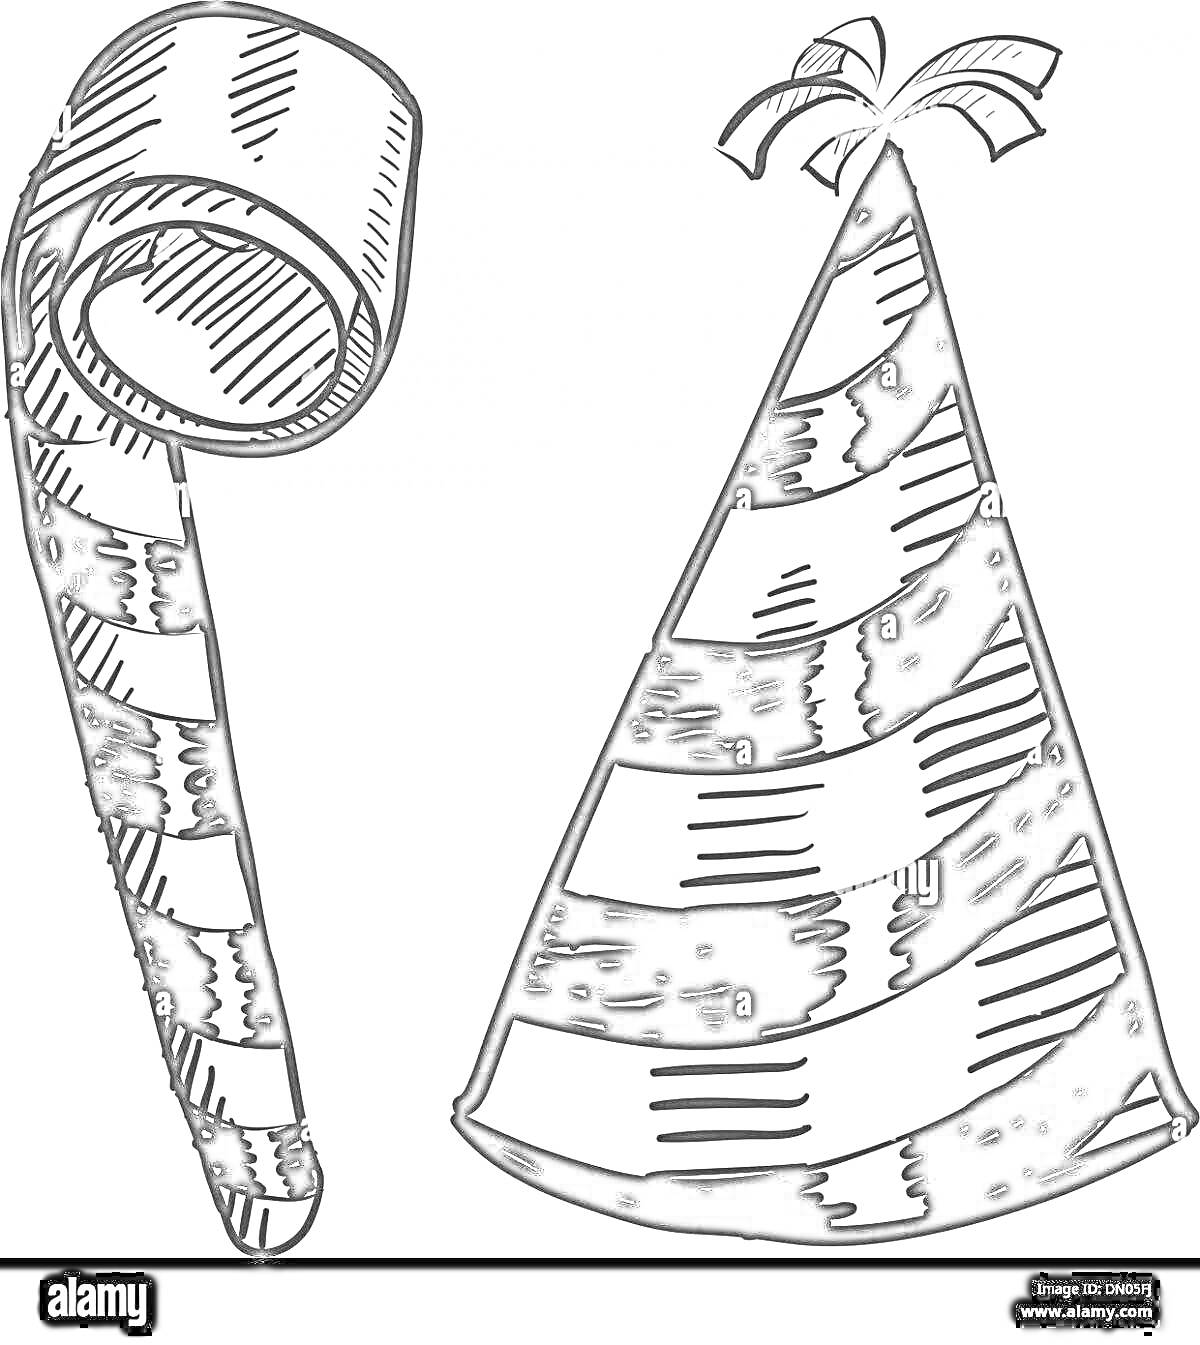 Раскраска Полосатая карнавальная дудка и полосатый праздничный колпачок с помпоном